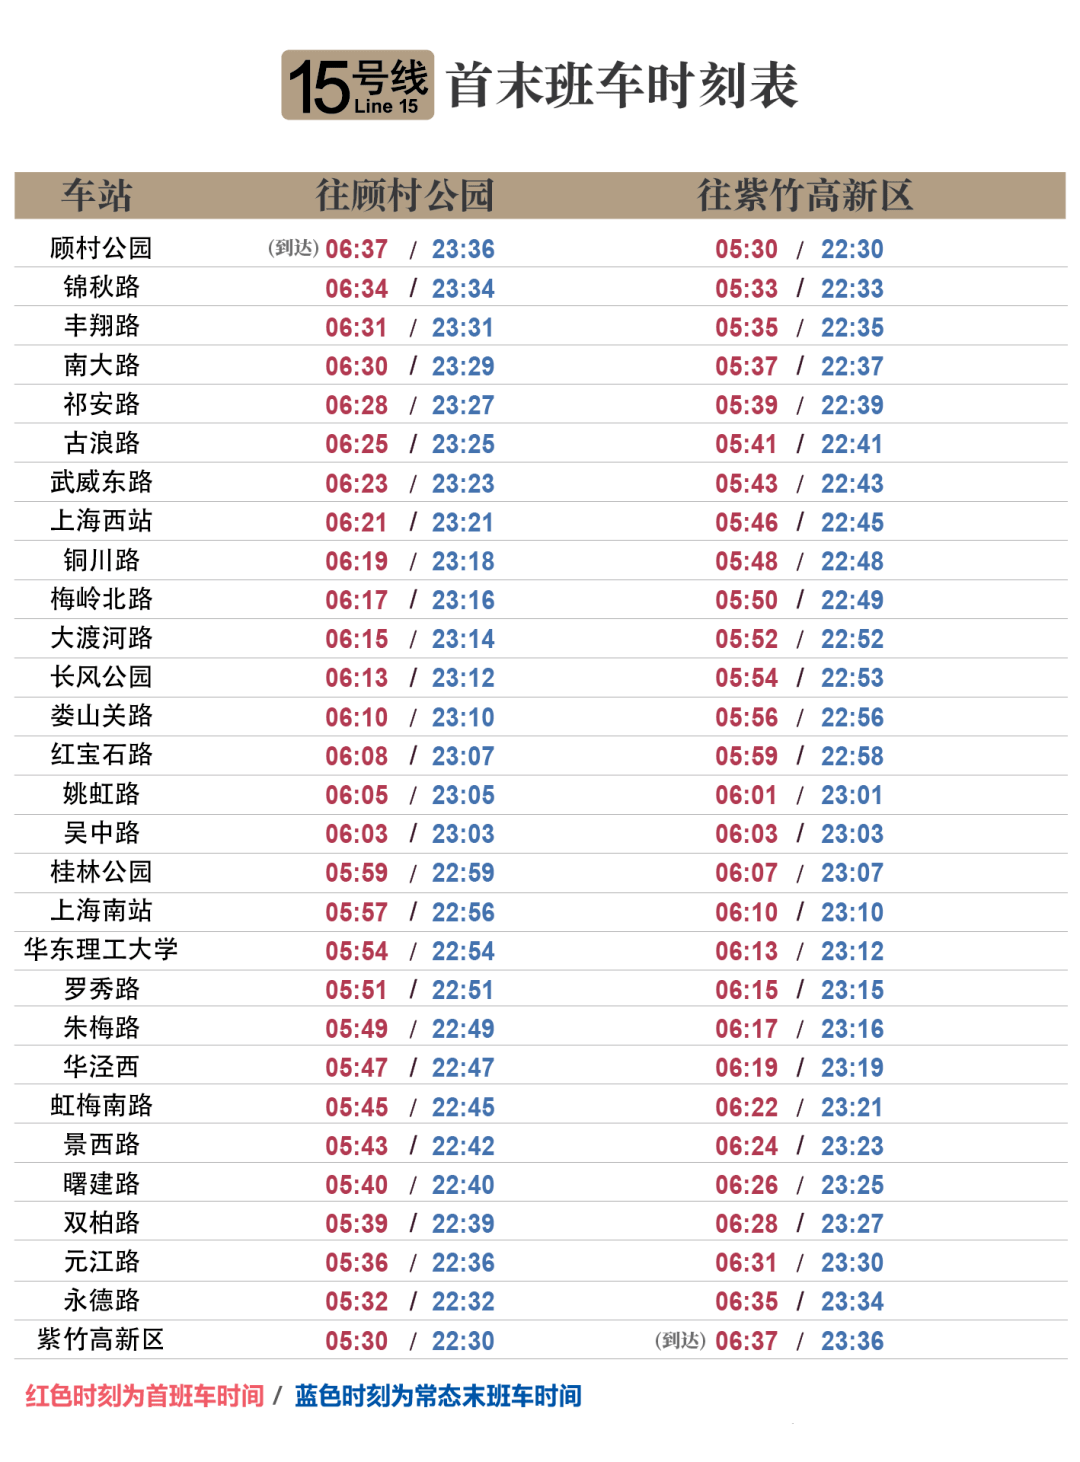 上海地铁15号线时刻表